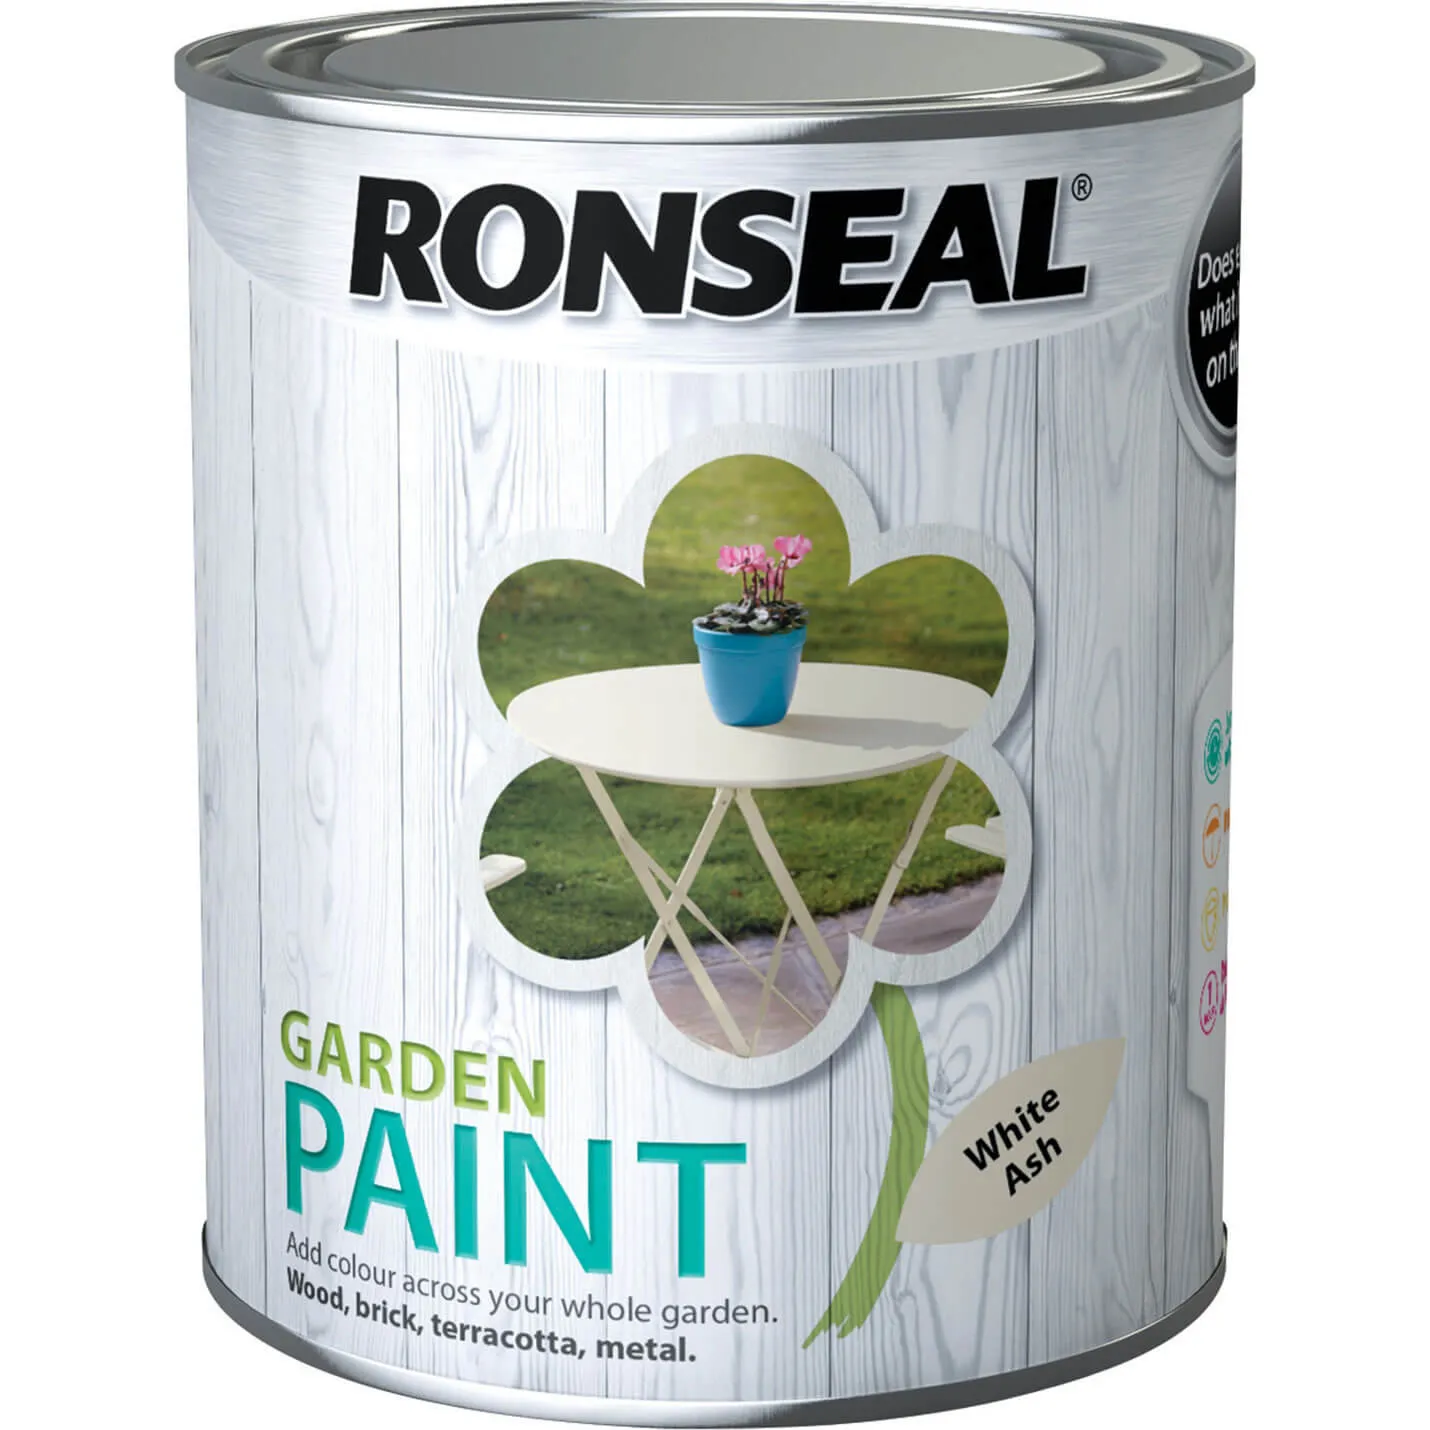 Ronseal General Purpose Garden Paint - White Ash, 750ml